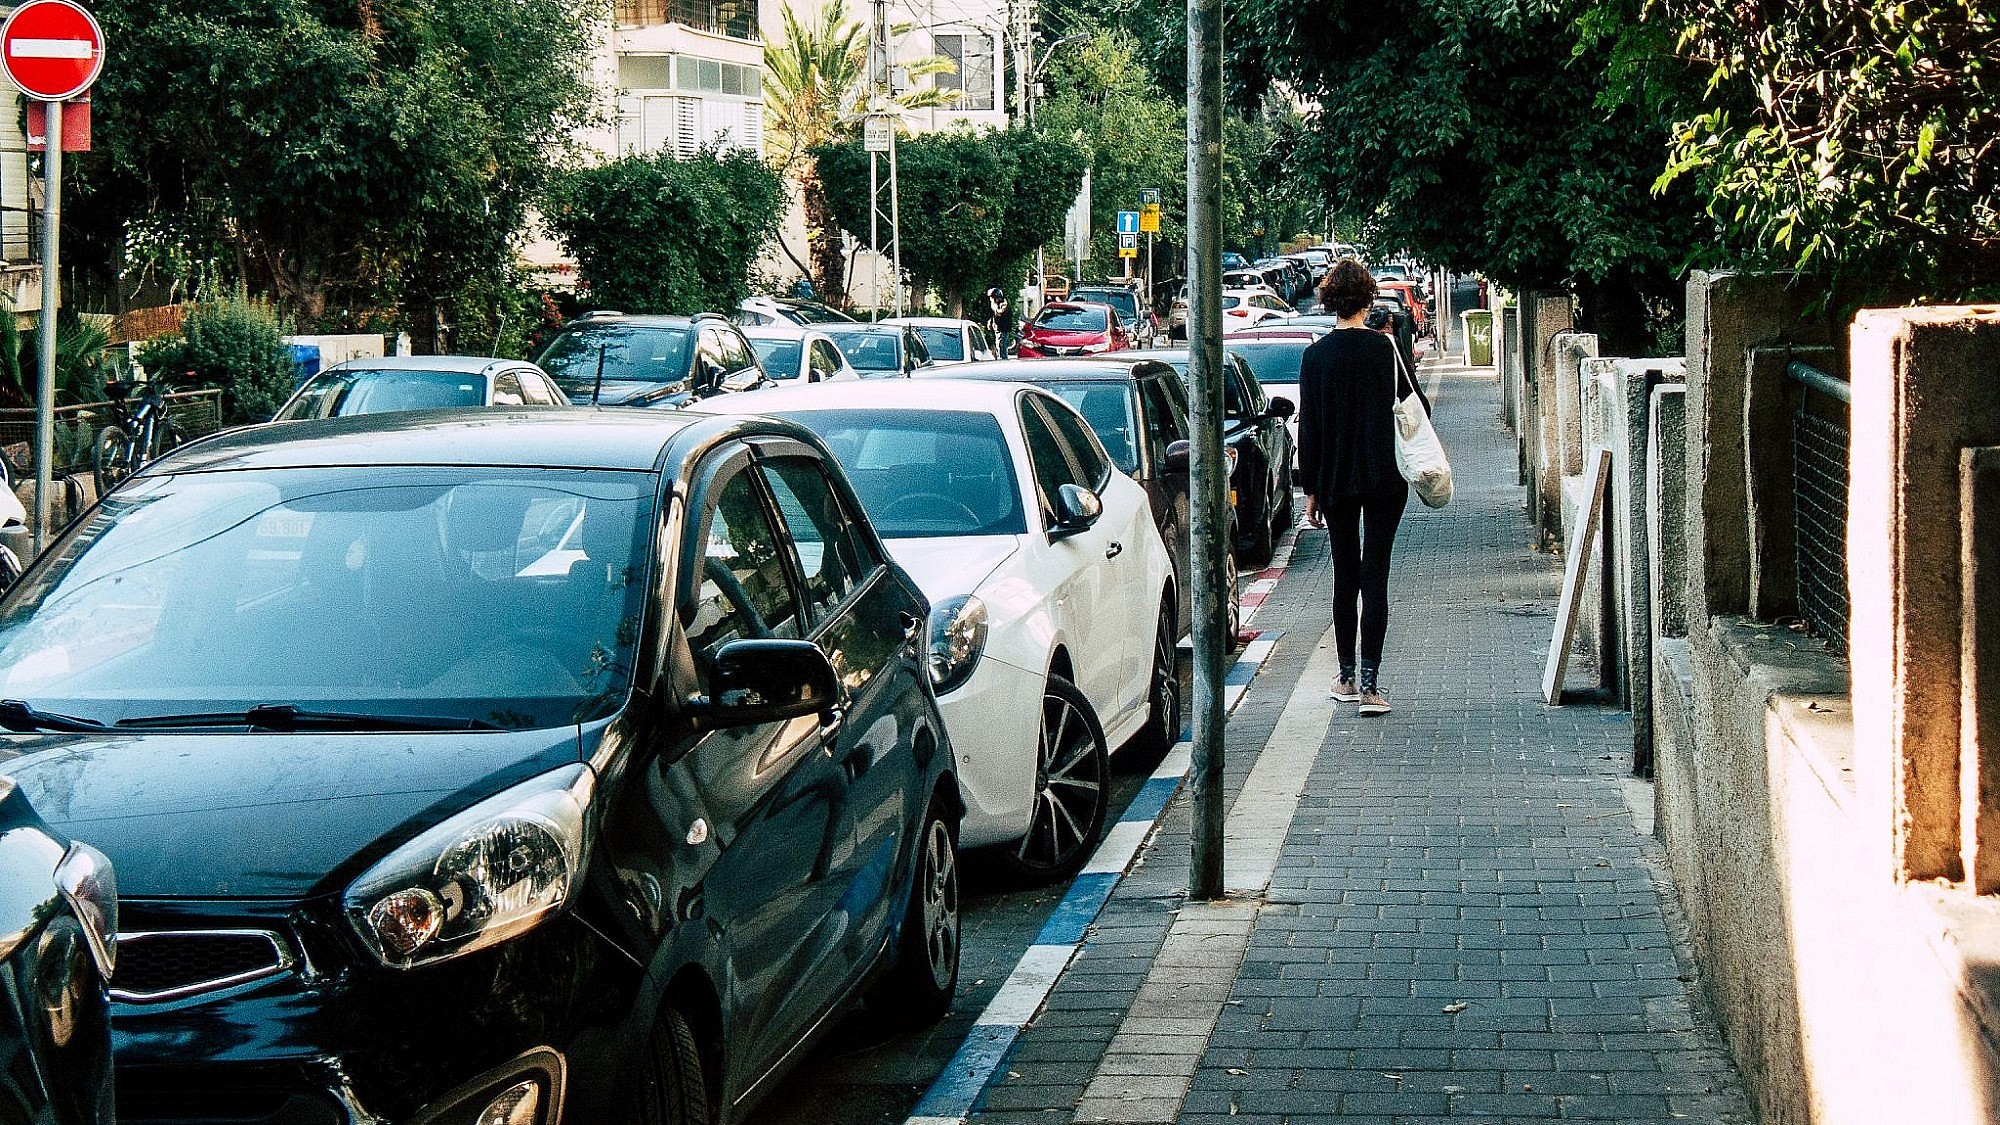 בתמונה: שטח ציבורי חינם לשימוש פרטי. מכוניות חונות בכחול לבן בתל אביב (צילום: Shutterstock)